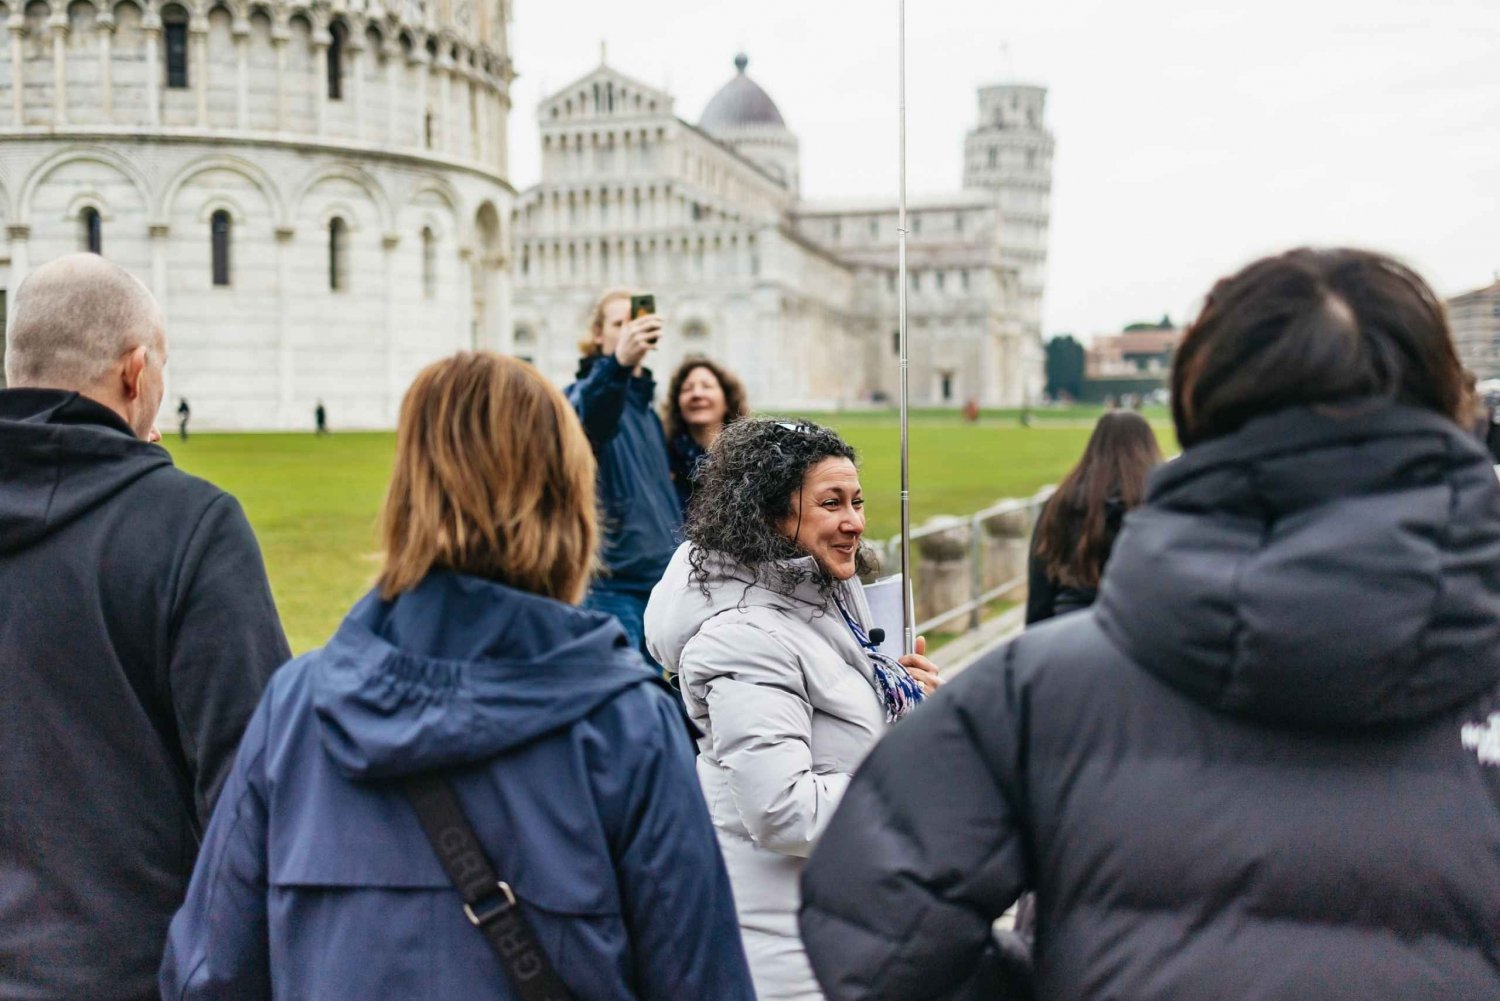 Florencia: Experiencia en Pisa, Siena, San Gimignano y Chianti